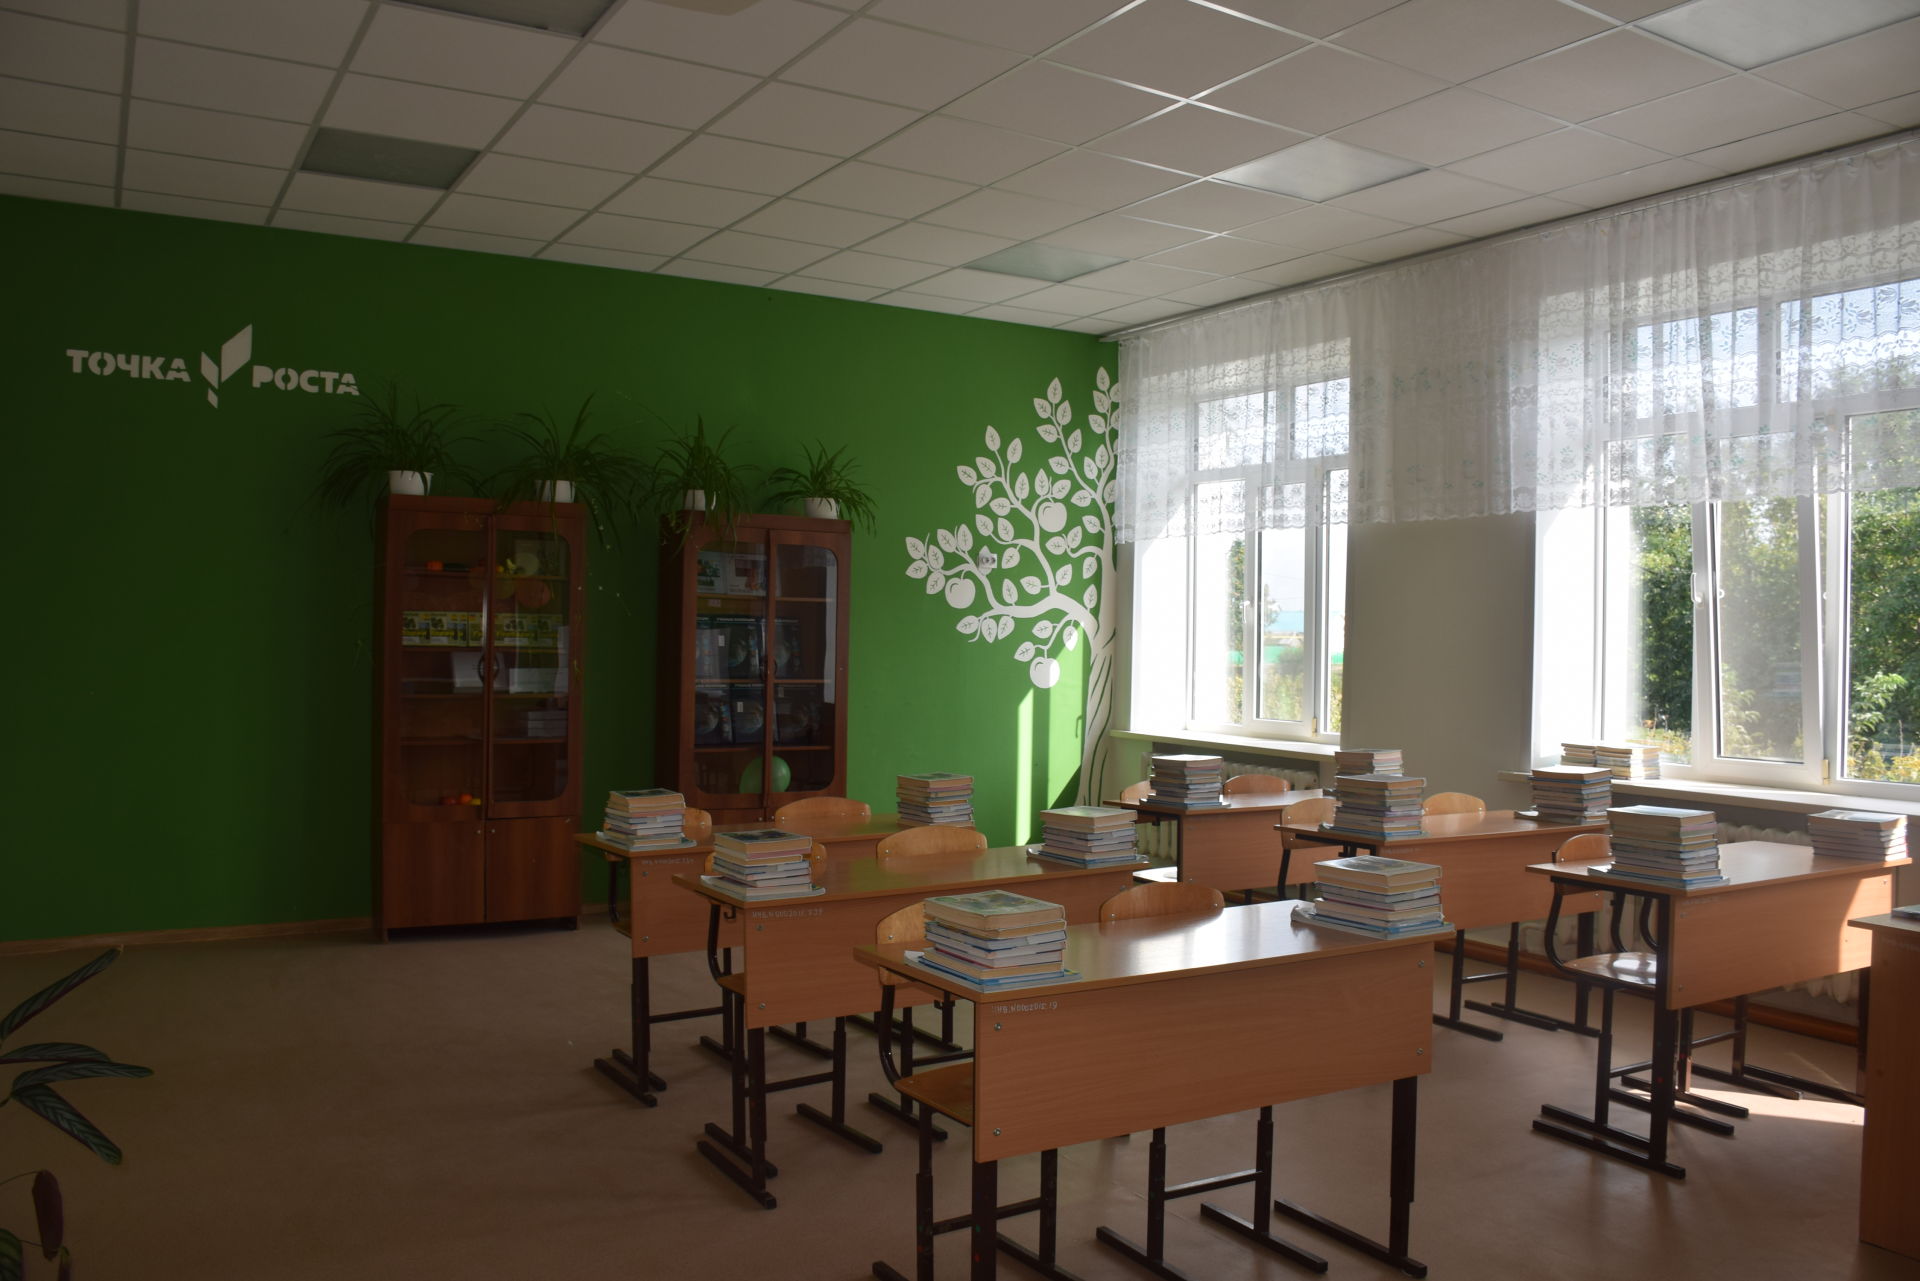 В Чулпановской школе открылся образовательный центр «Точка роста»